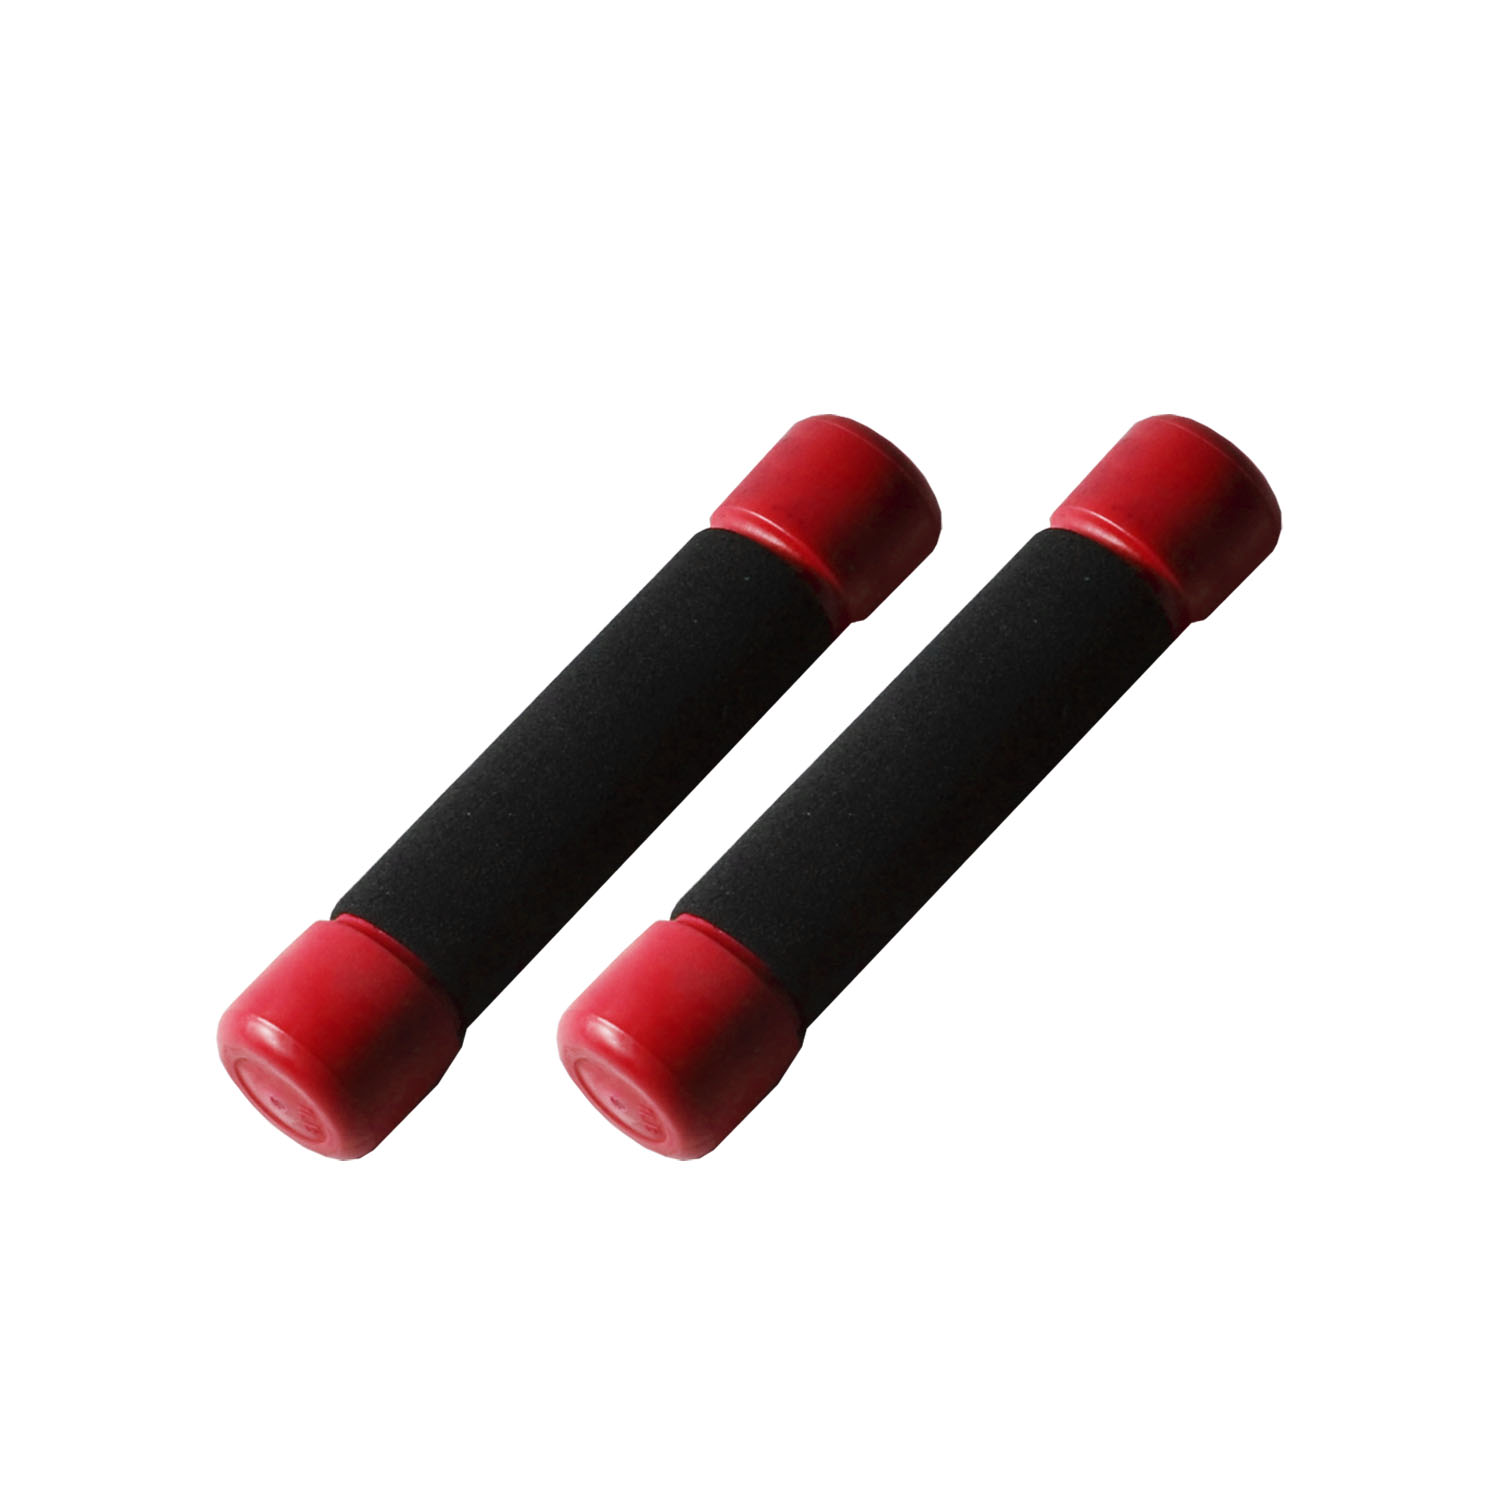 ดัมเบล ที่ยกน้ำหนัก 1 LB (0.5 kg) หุ้มพลาสติก ดรัมเบล - สีแดง 1 คู่ / Pair of Dumbbell 1 LB (0.5 kg) - Red